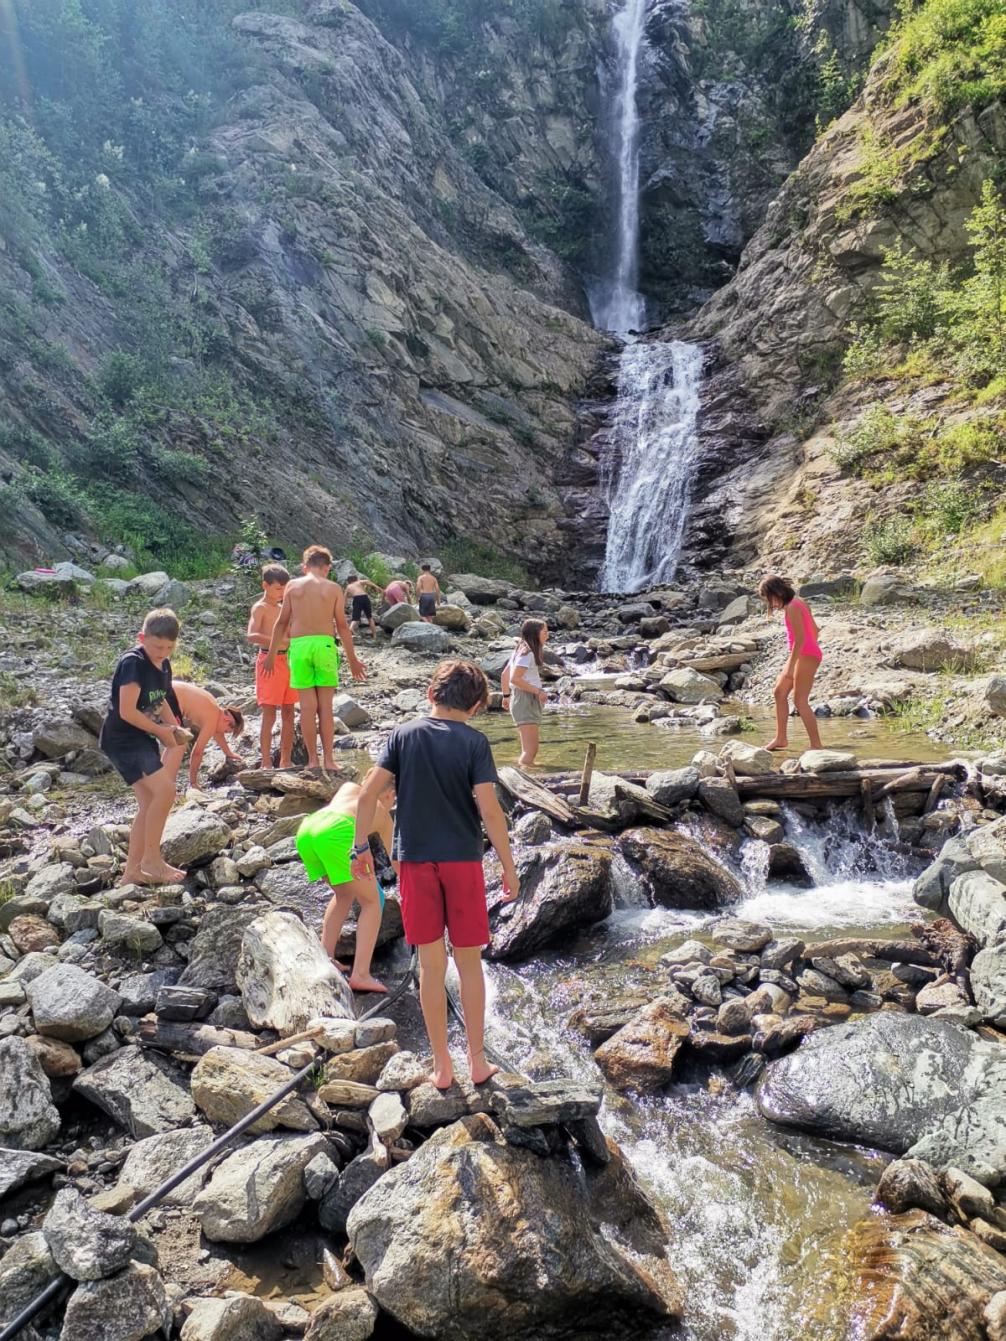 Kinder am Wasserfall